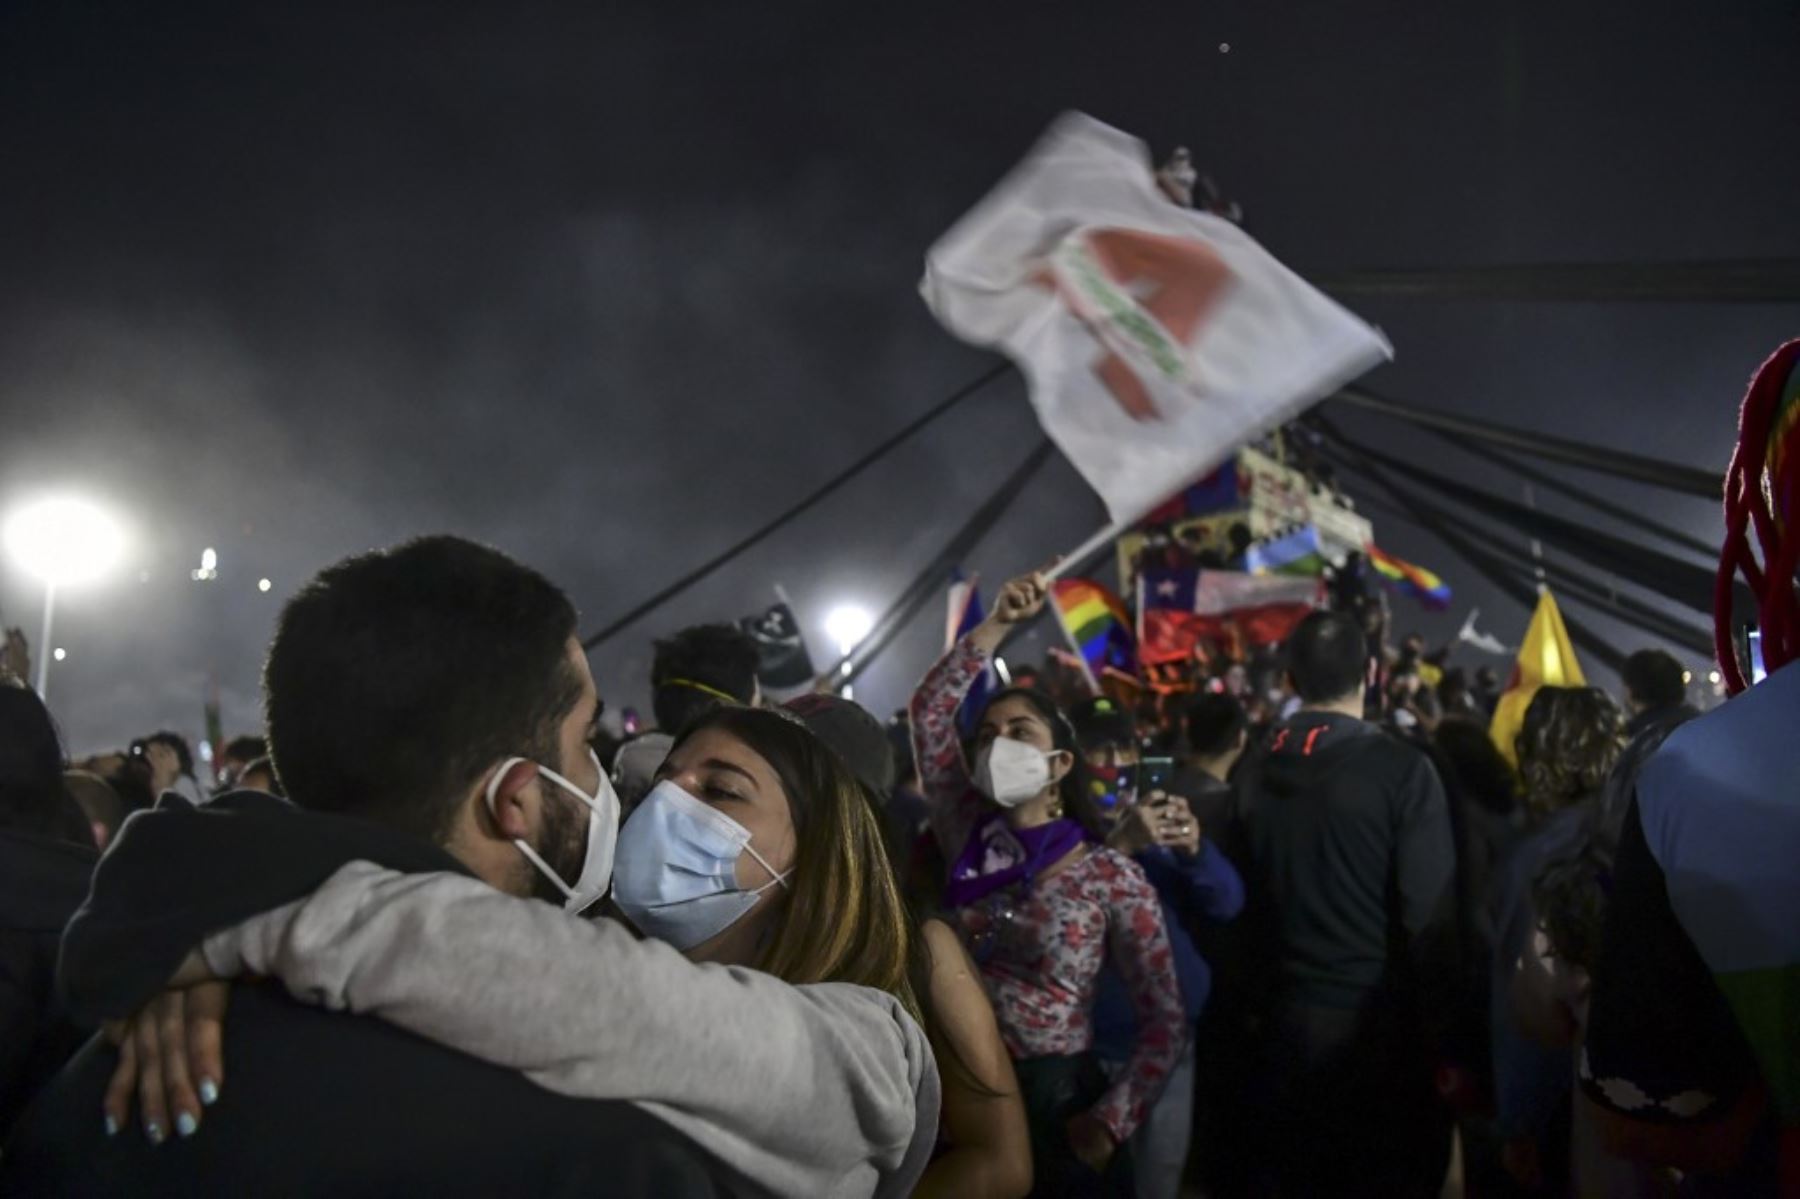 Los manifestantes que apoyan la reforma de la constitución chilena celebran mientras esperan los resultados oficiales del referéndum en la Plaza Italia en Santiago